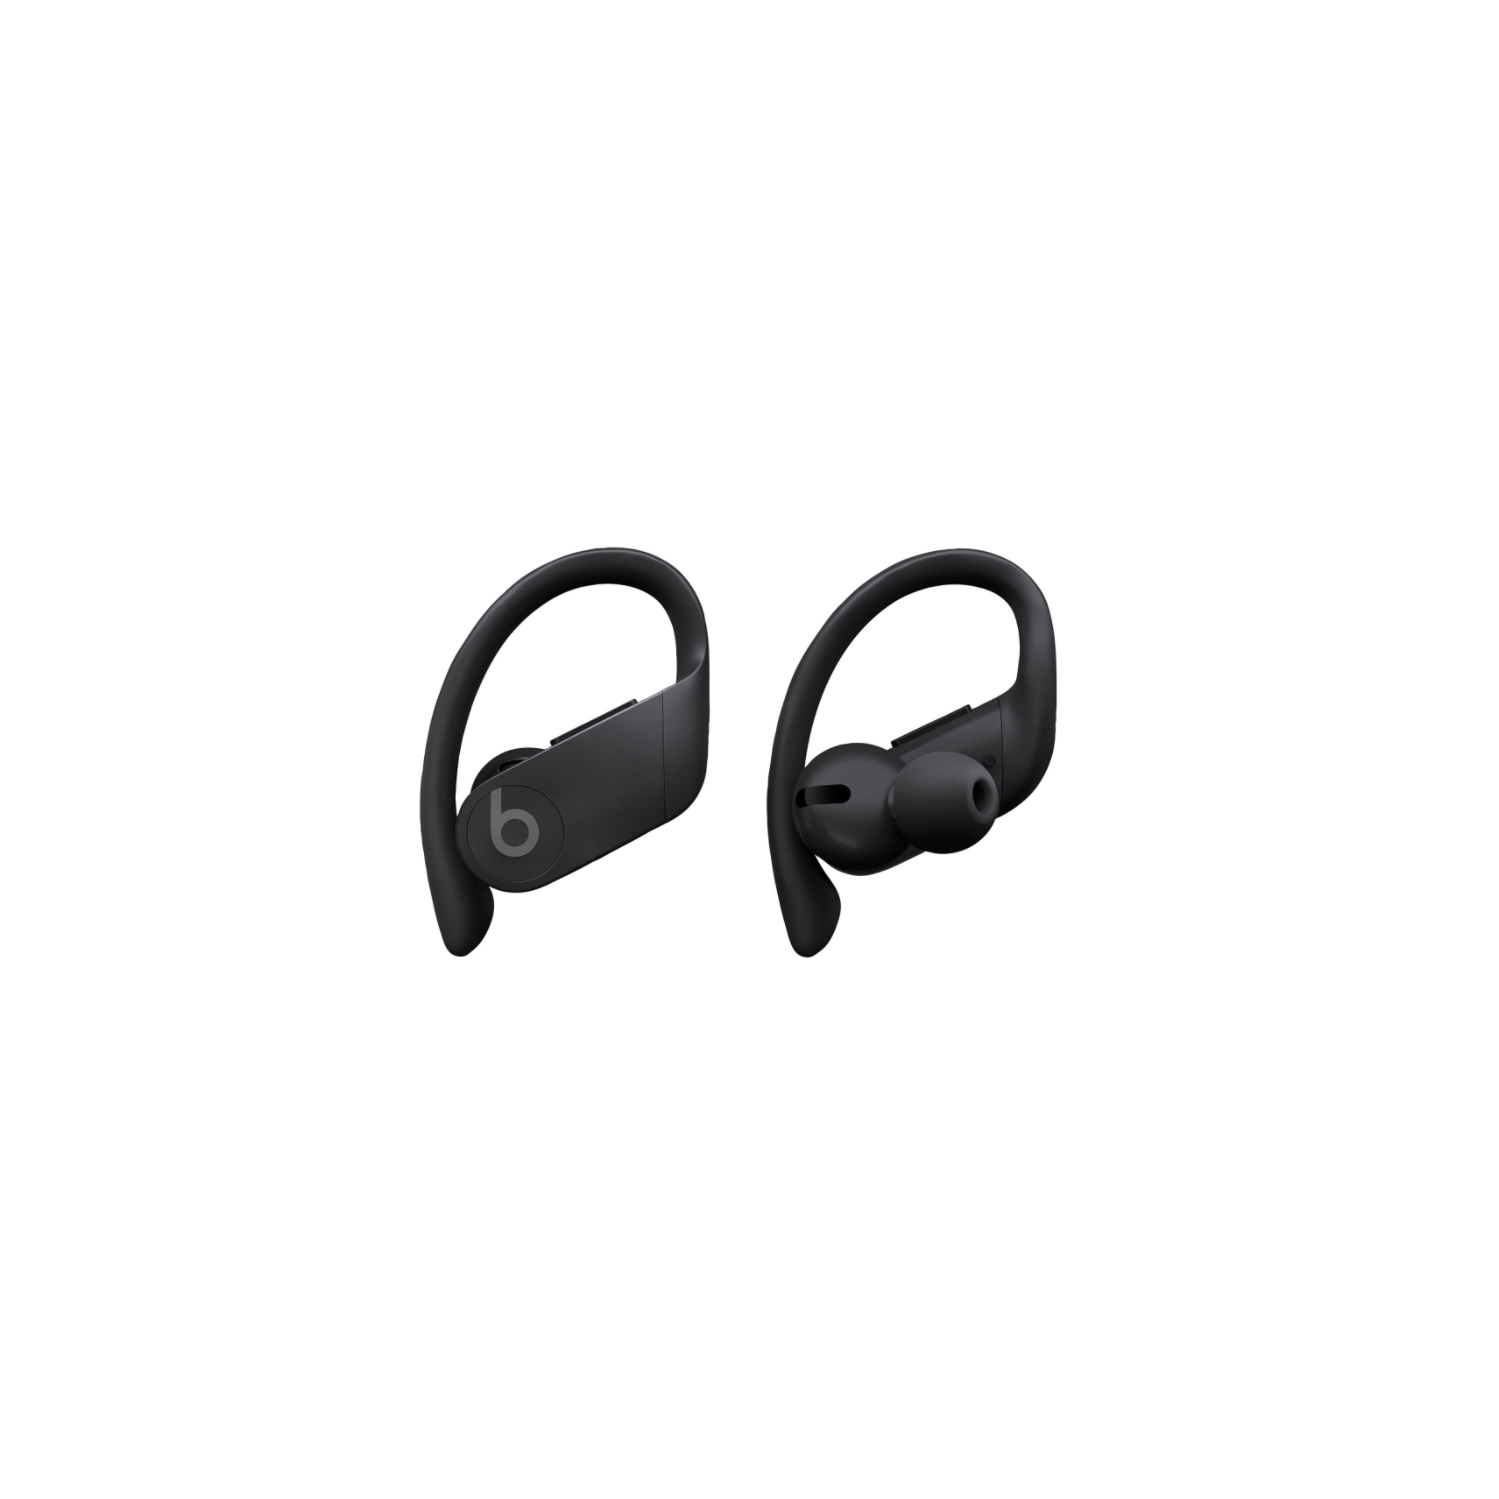 Open Box - Beats by Dr. Dre Powerbeats Pro In-Ear Truly Wireless Headphones MY582LL/A - Black